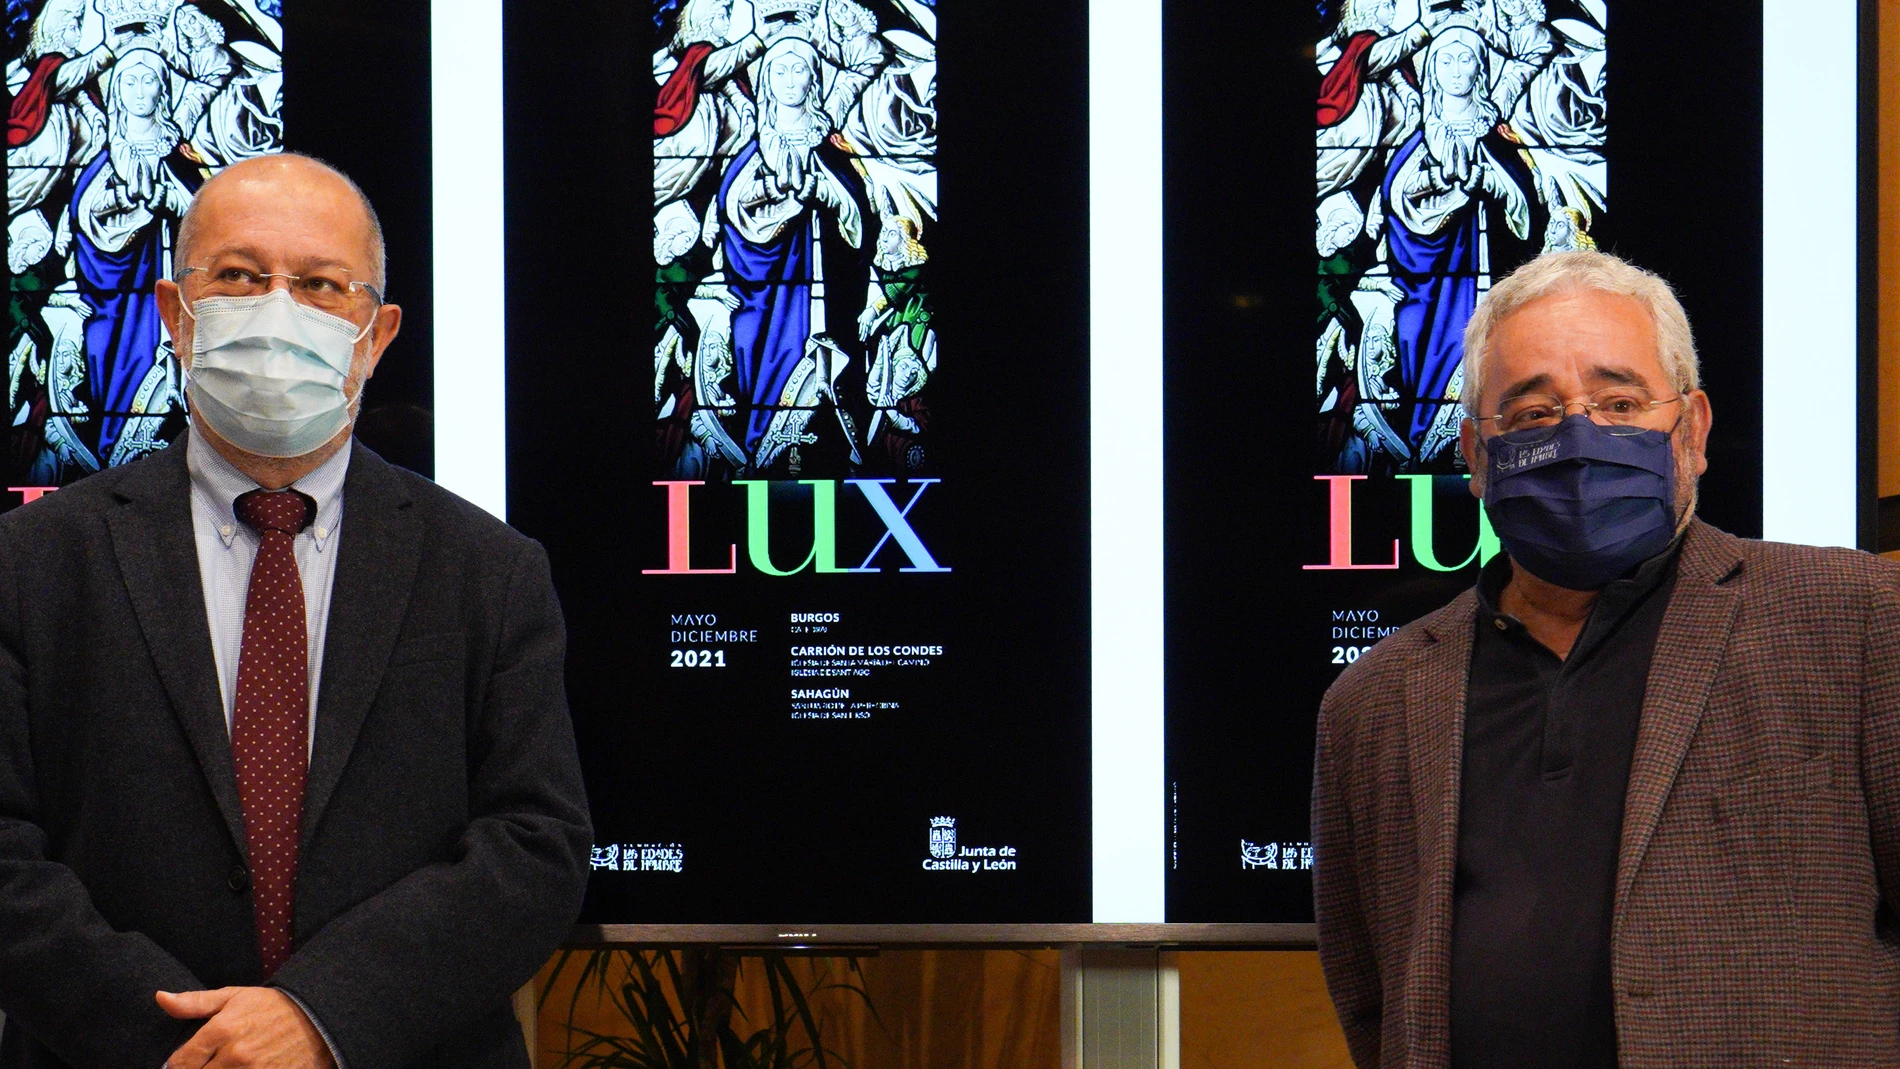 Presentación de la imagen promocional de "Lux" por parte de Francisco Igea y Gonzalo Jiménez